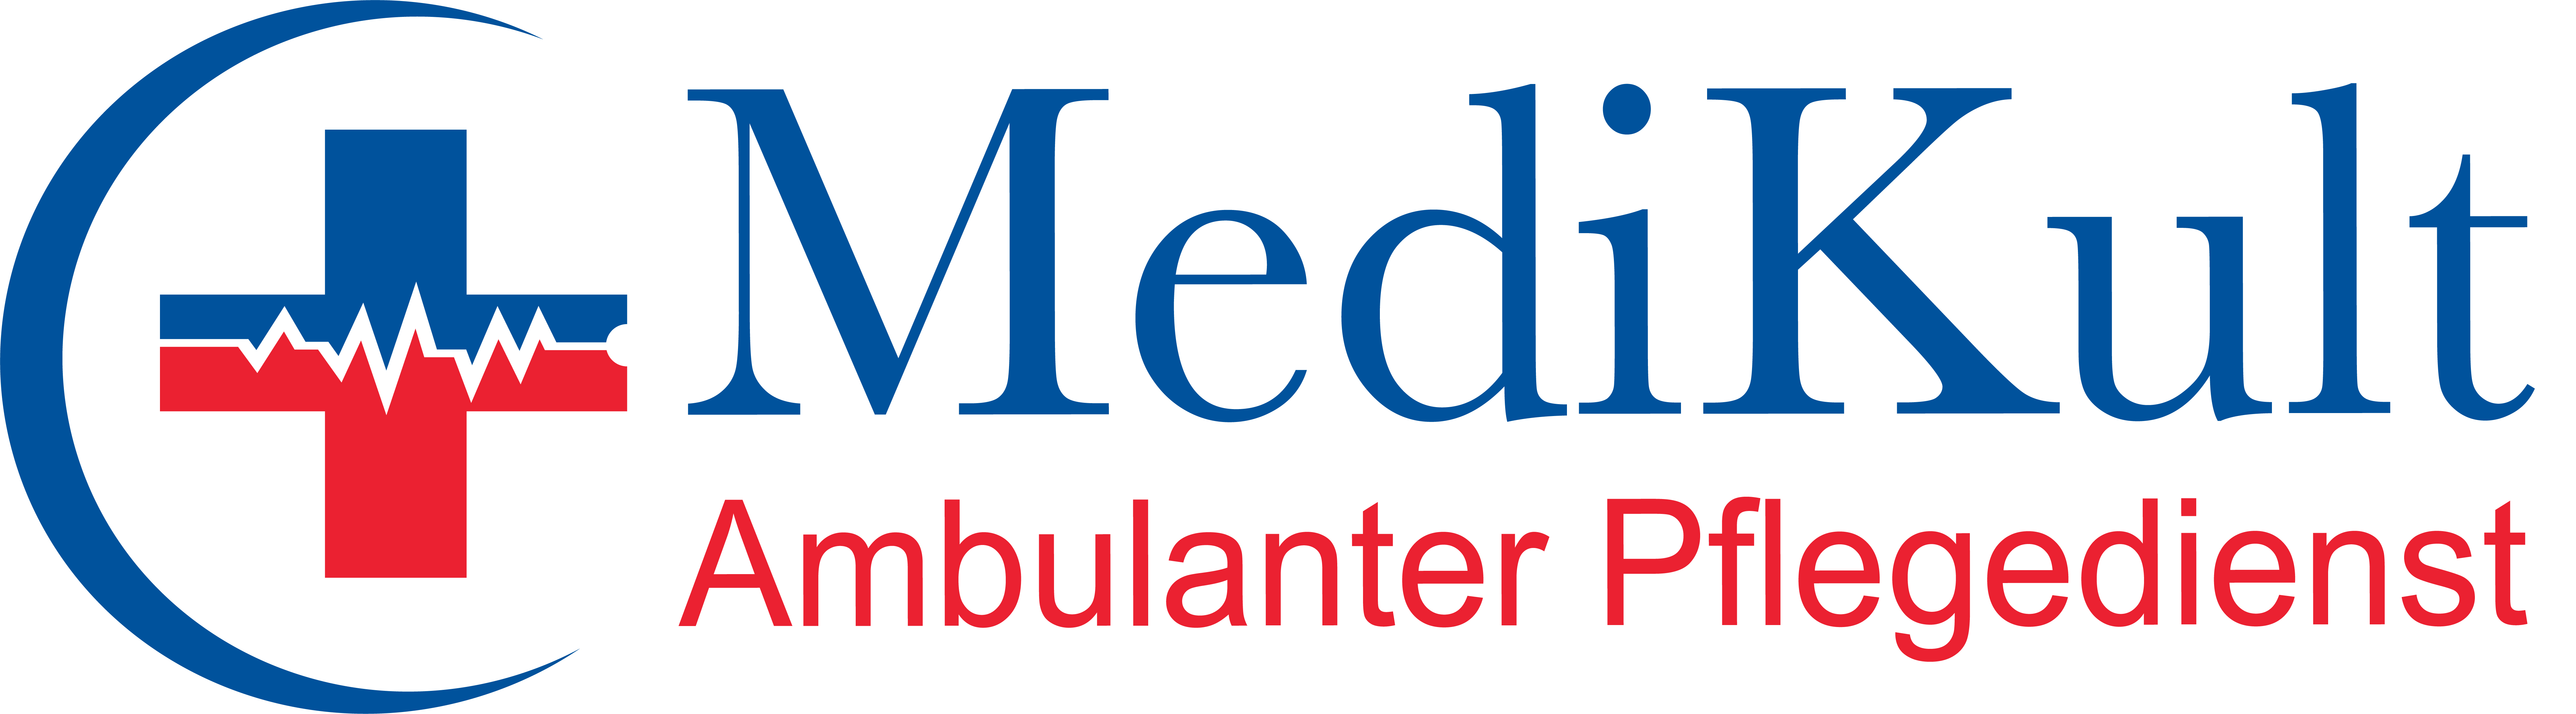 Medi-Kult Ambulanter Pflegedienst, Heidelberg (Bahnstadt)